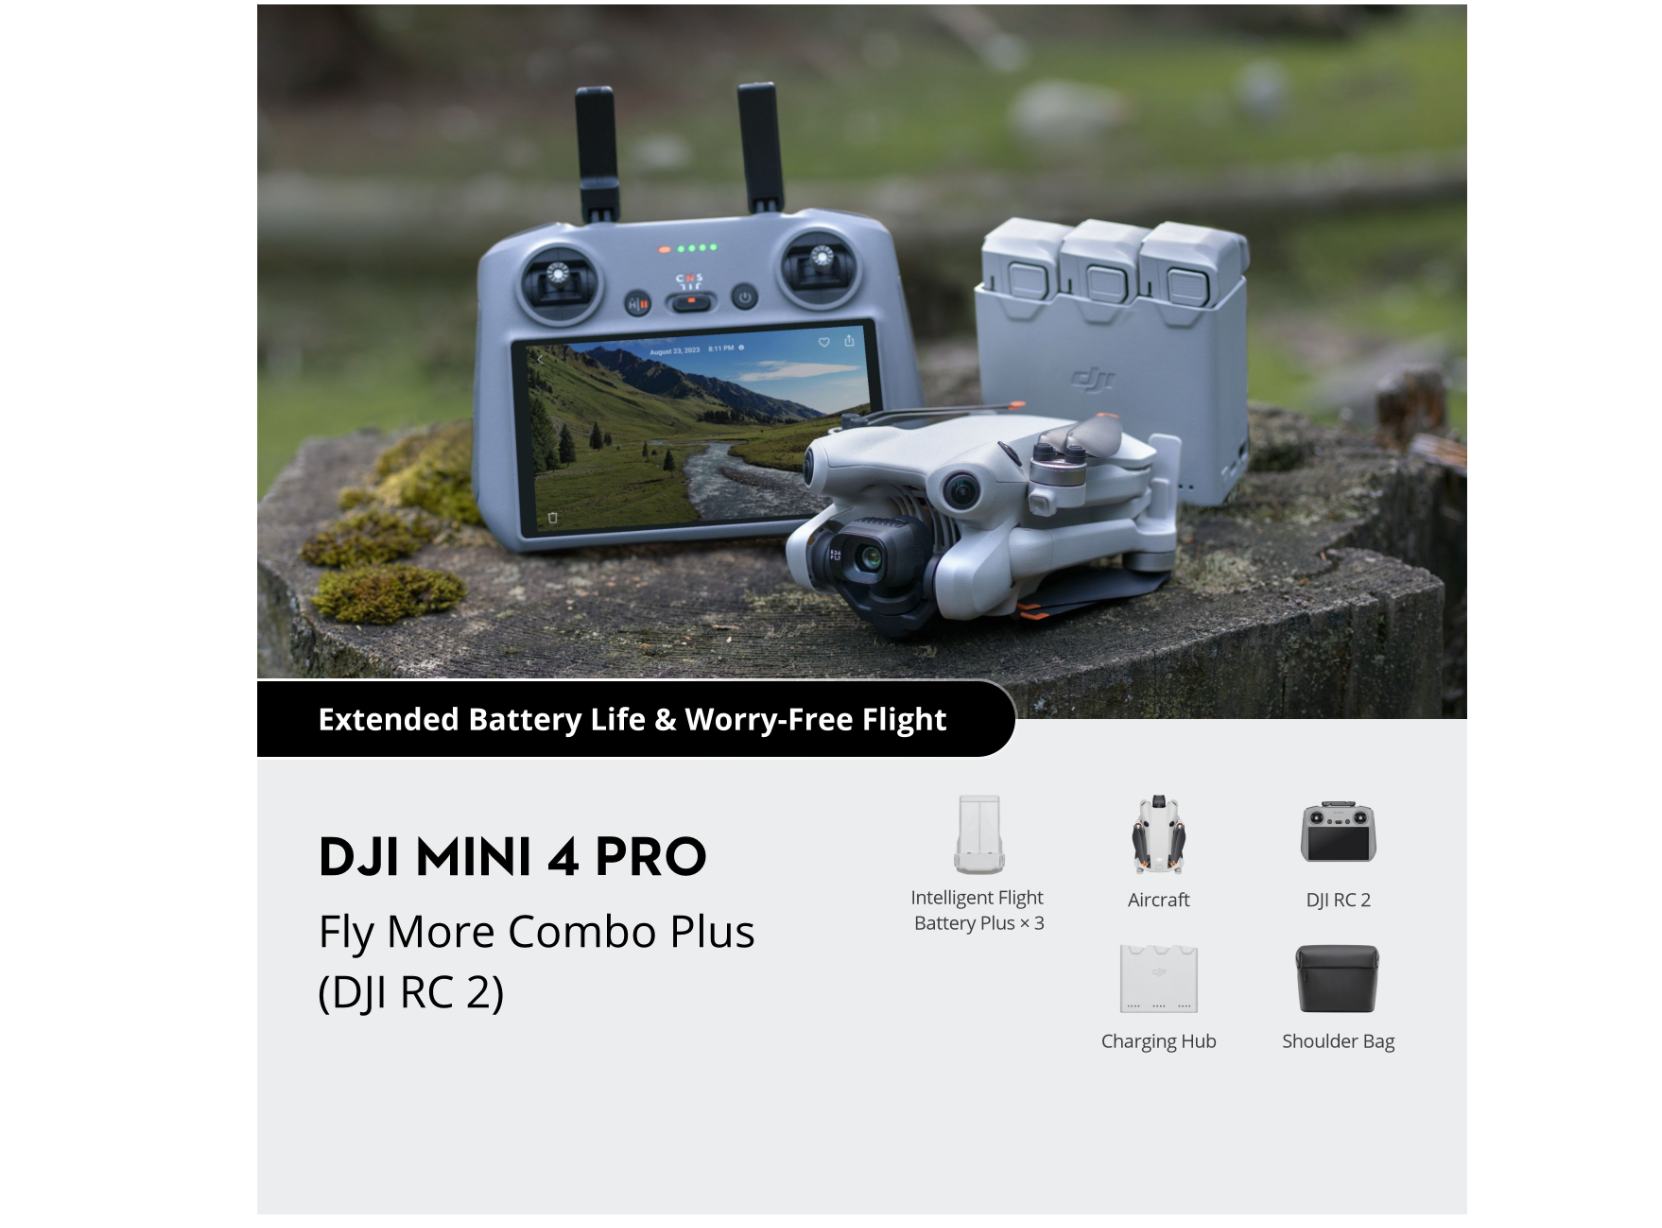 Buy DJI Mini 4 Pro Fly More Combo Plus with DJI RC 2